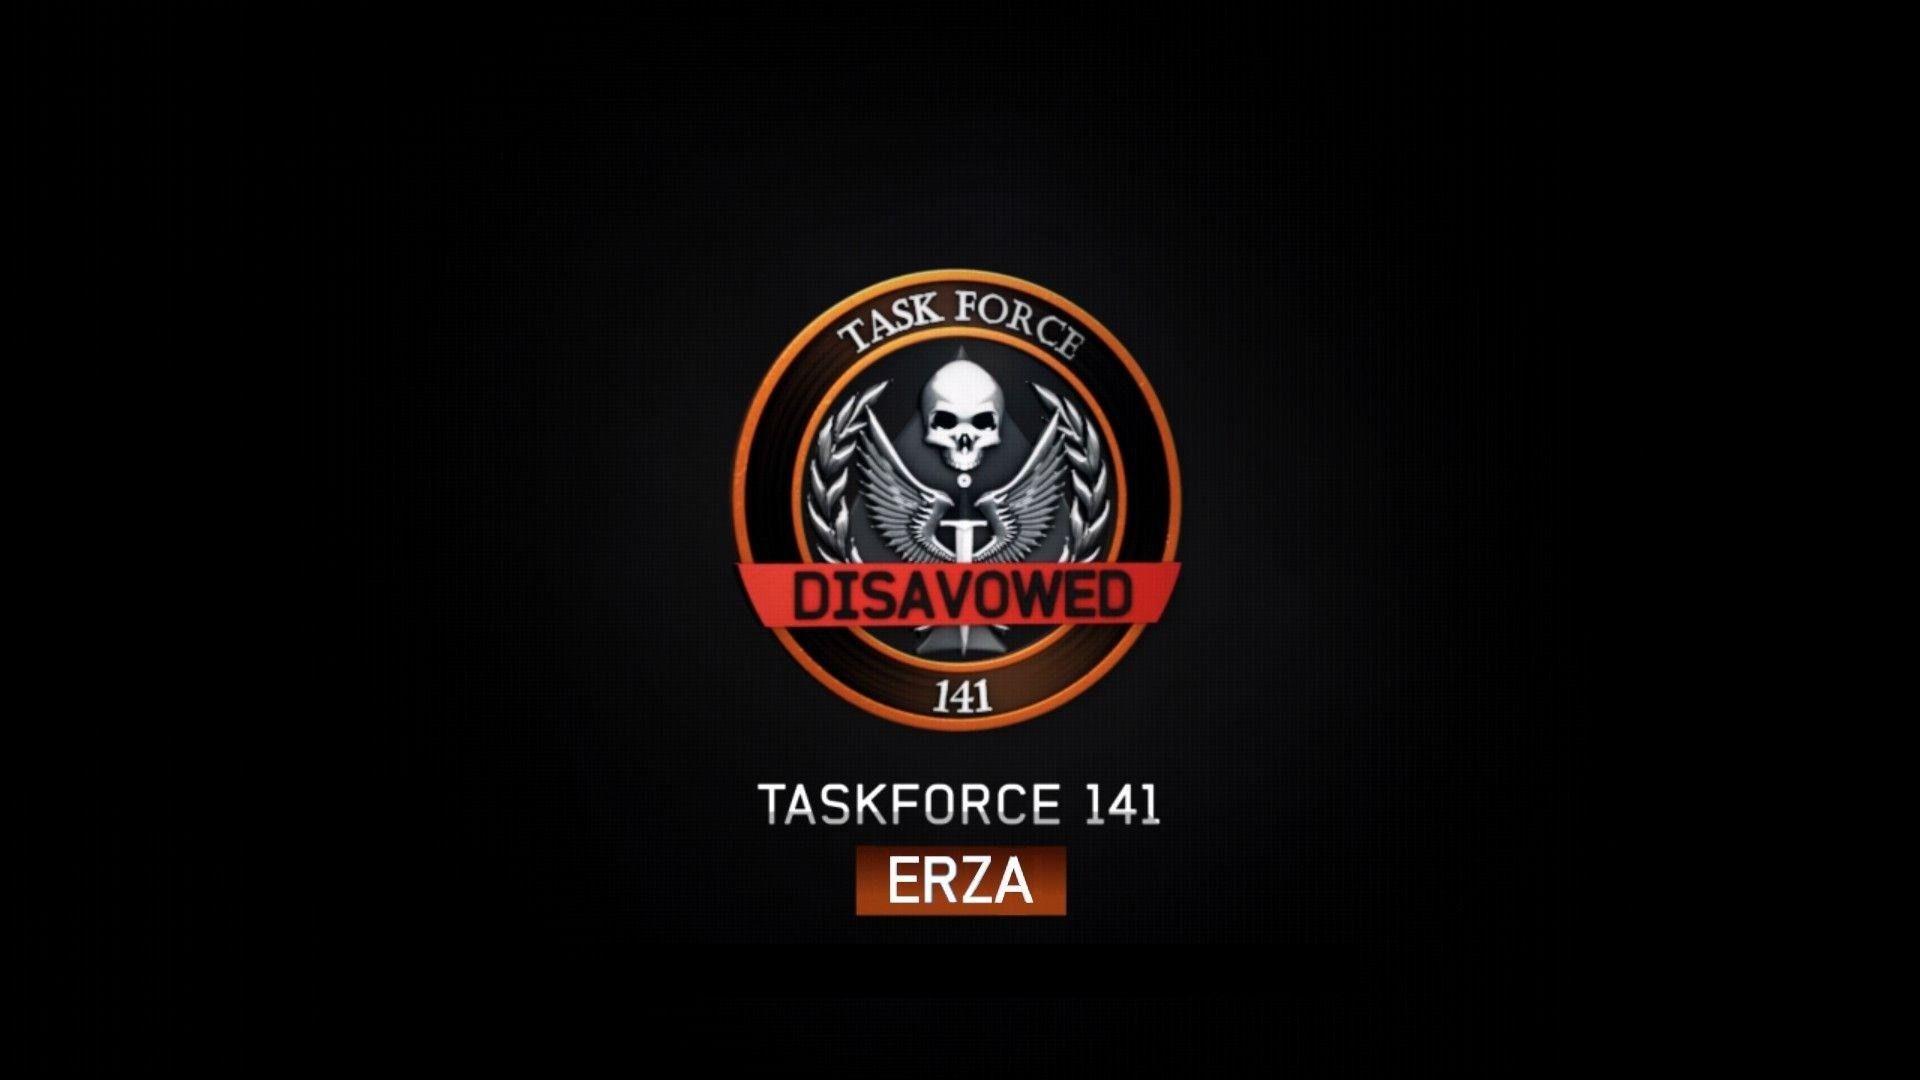 Task force 141 HD wallpapers  Pxfuel